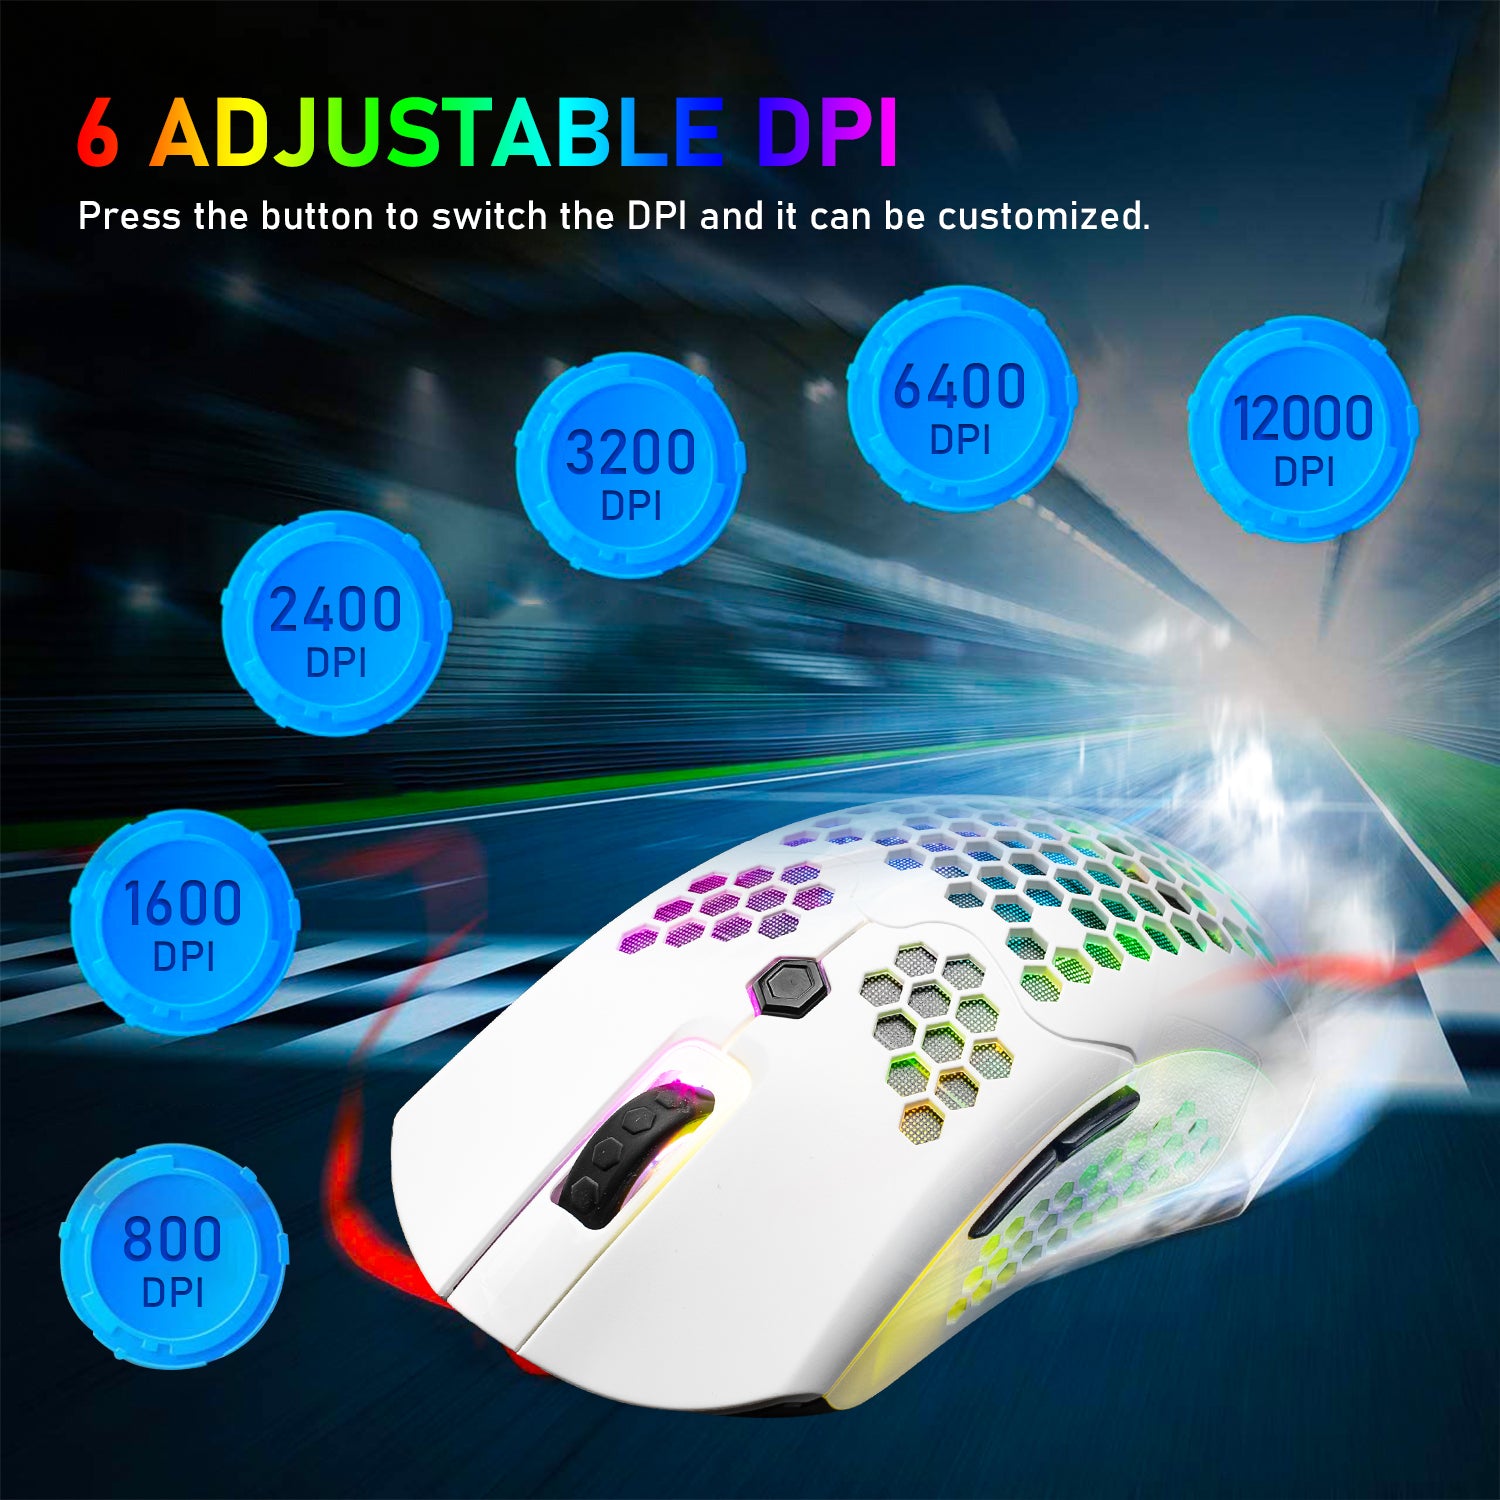 Mouse da gioco wireless, 16 mouse wireless/cablati ultraleggeri retroilluminati RGB con driver programmabile, batteria ricaricabile da 800 mA, Pixart 3325 12000 DPI, guscio a nido d'ape leggero per PC Gamer